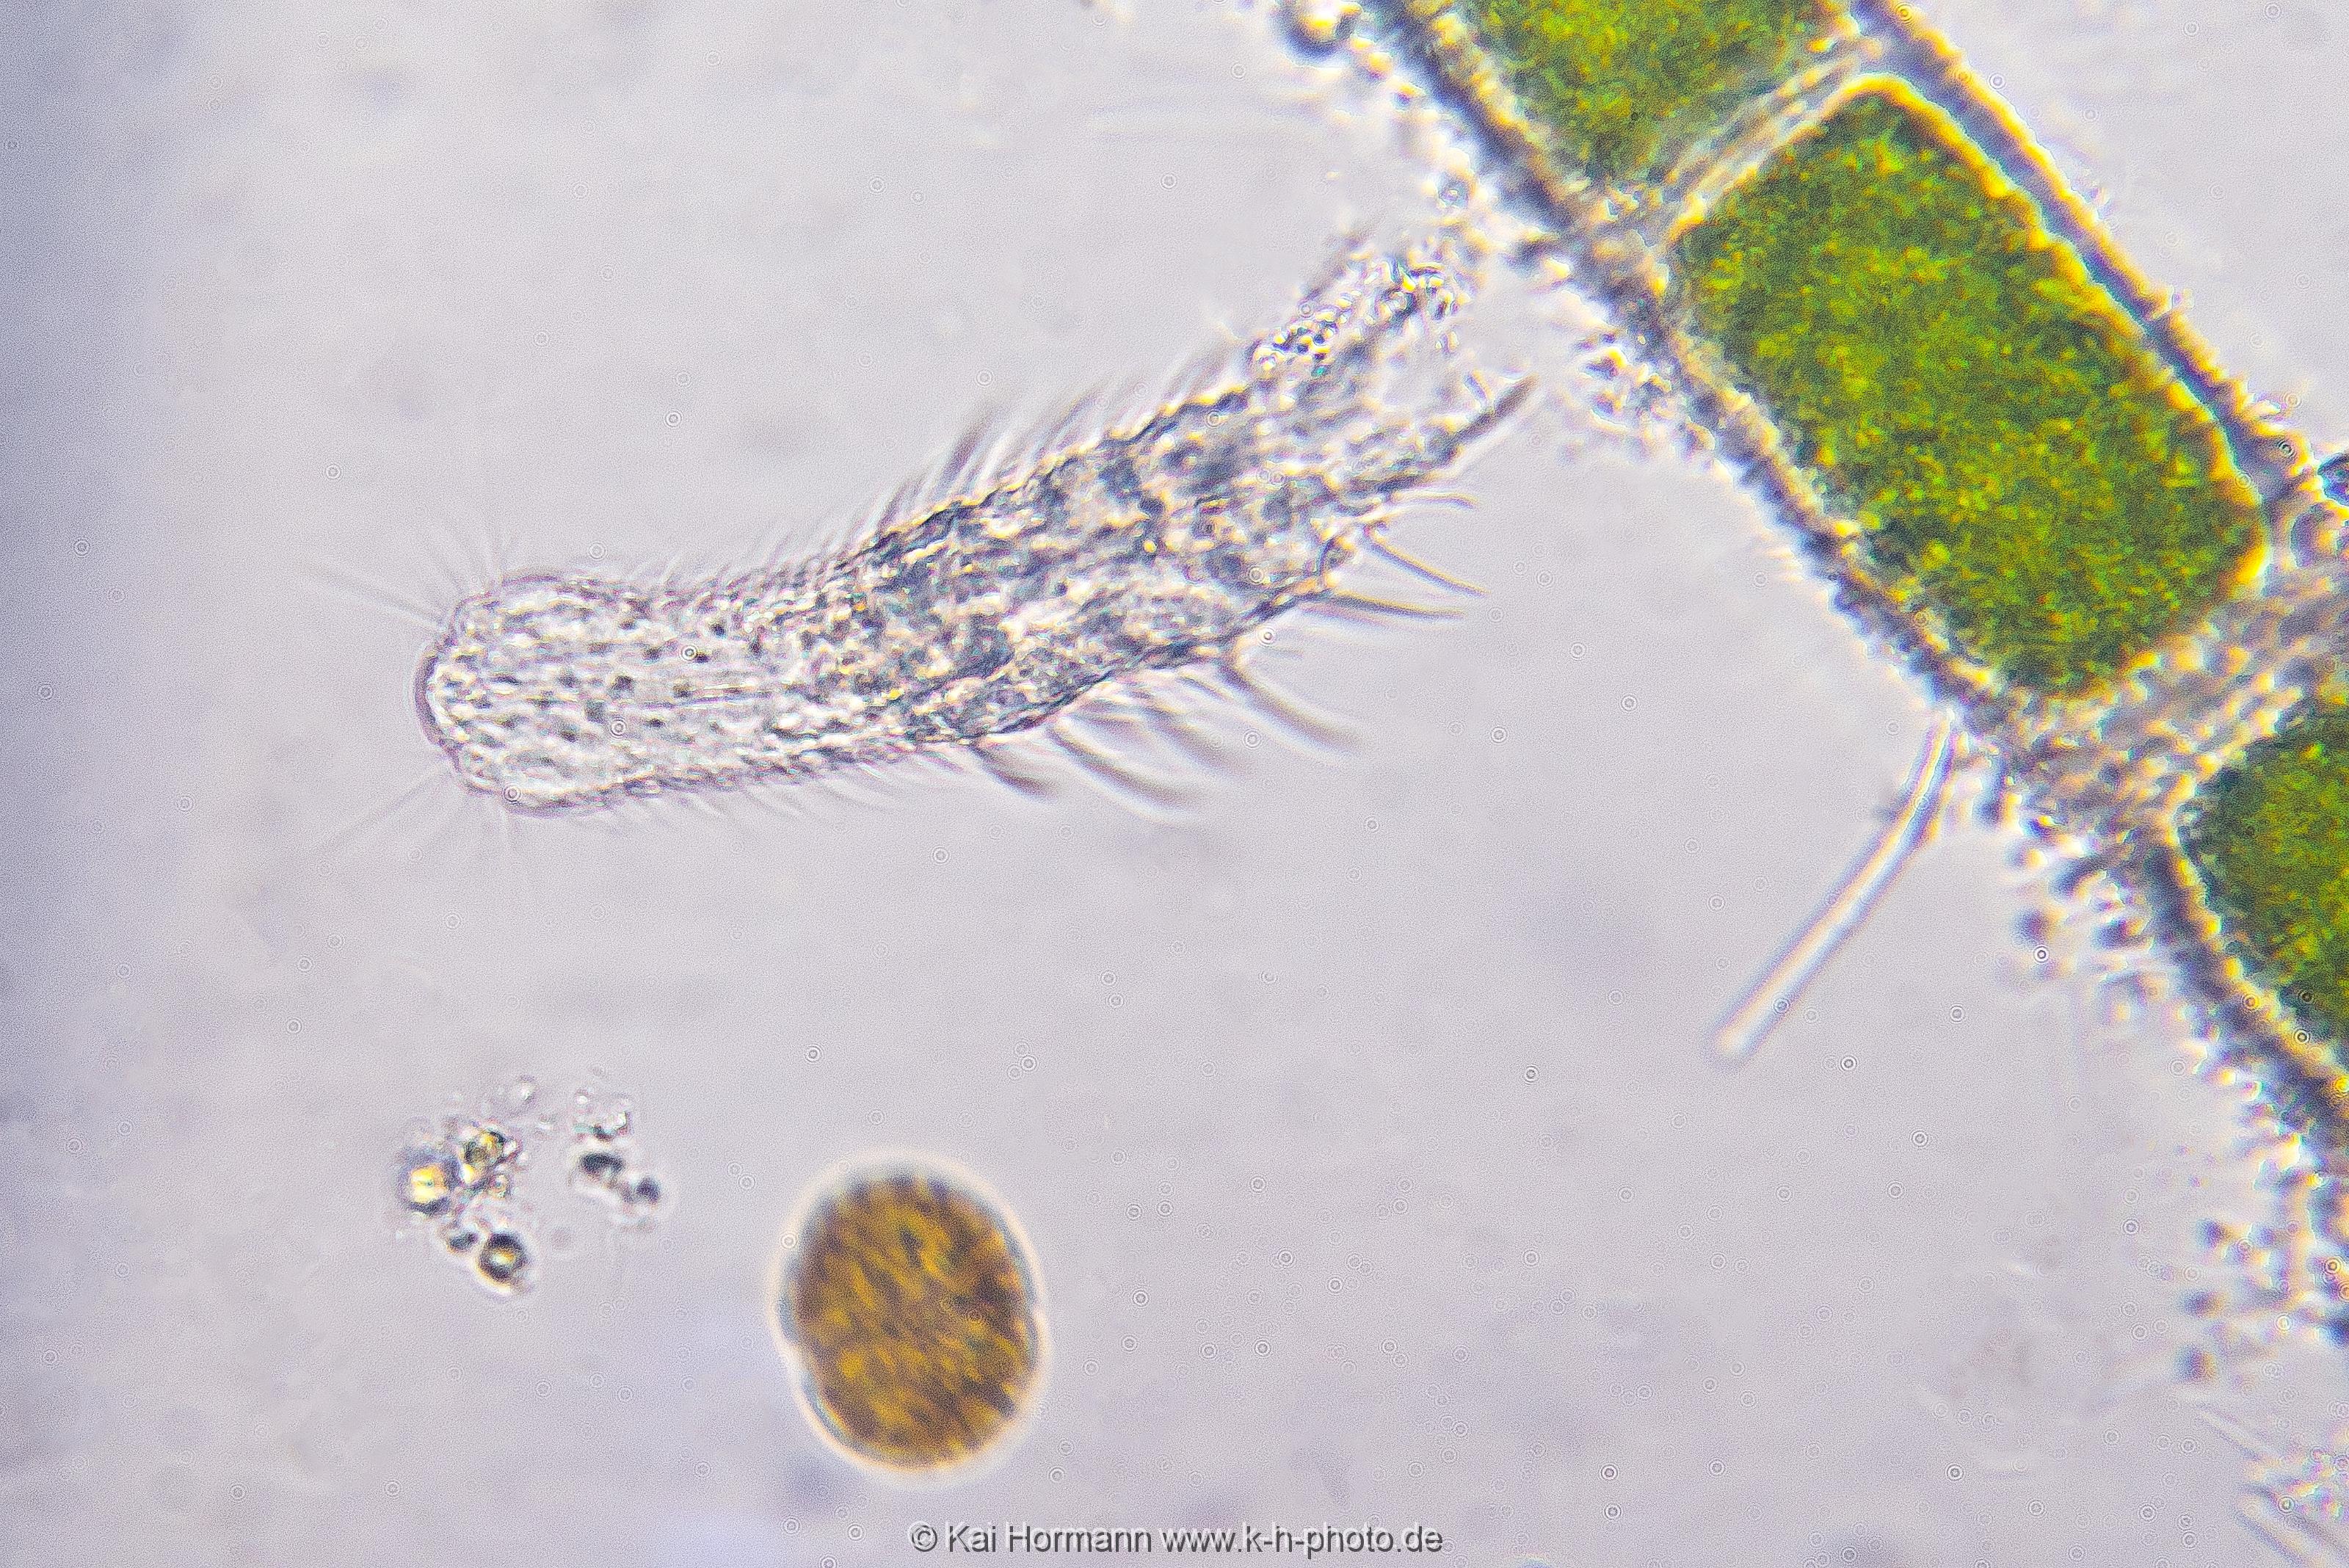 Bauchhärling Mikrofotografie: Mikroskopische Aufnahmen von Einzellern, Algen und Kleinstlebewesen.